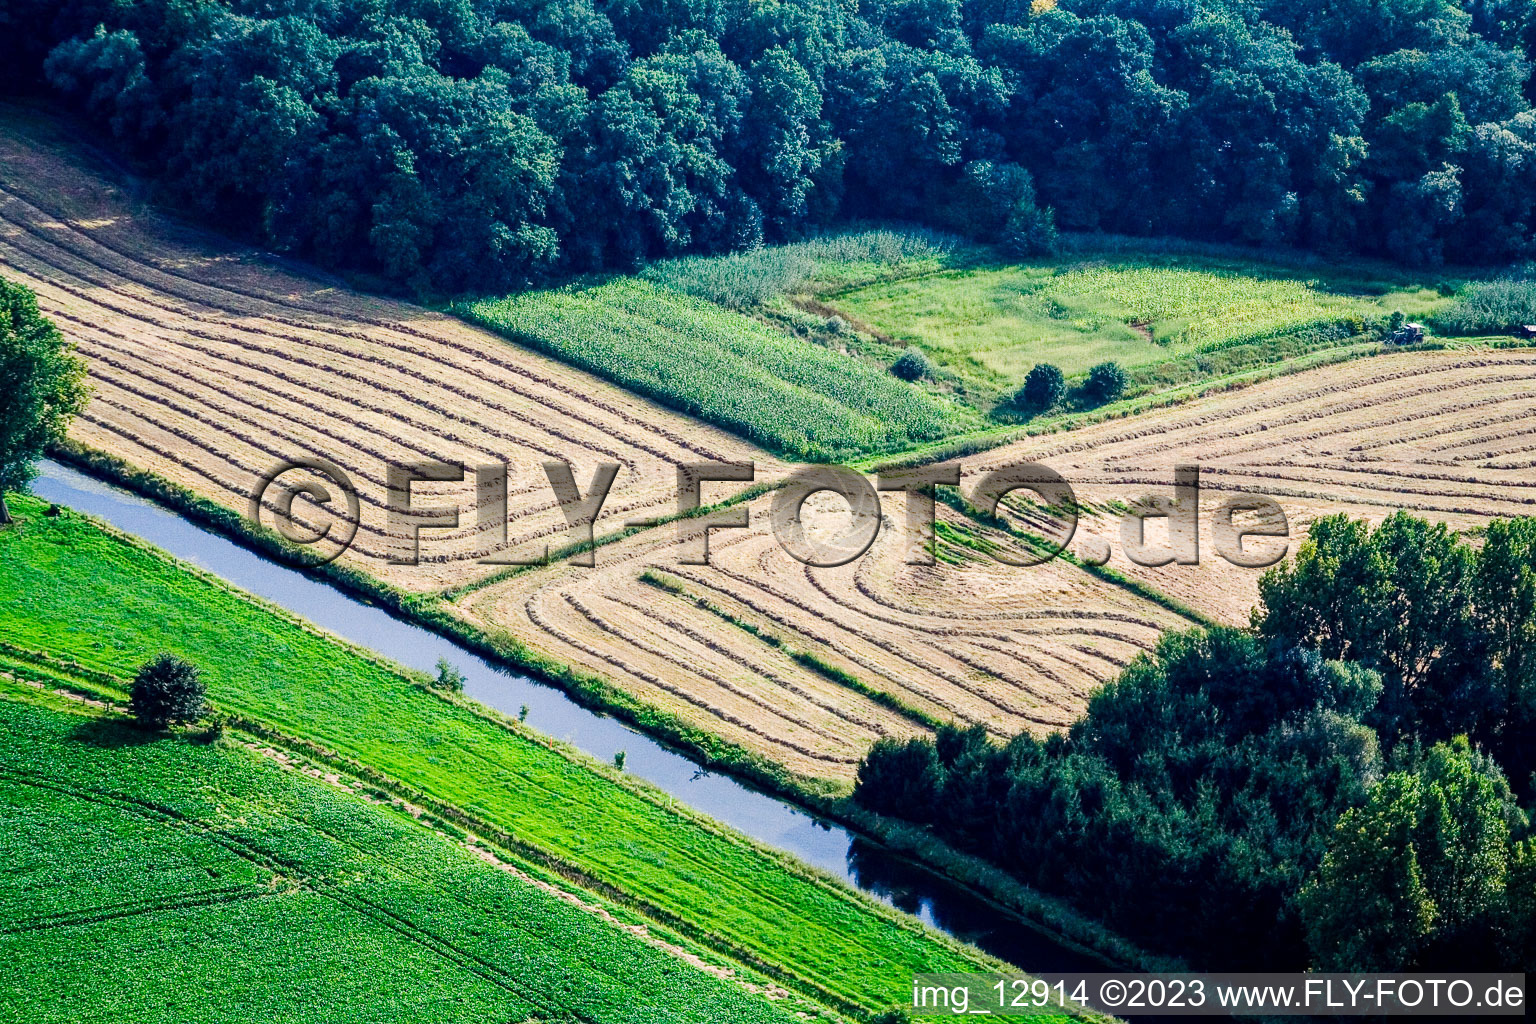 Drone recording of Between Kerken and Limburg in Kerken in the state North Rhine-Westphalia, Germany